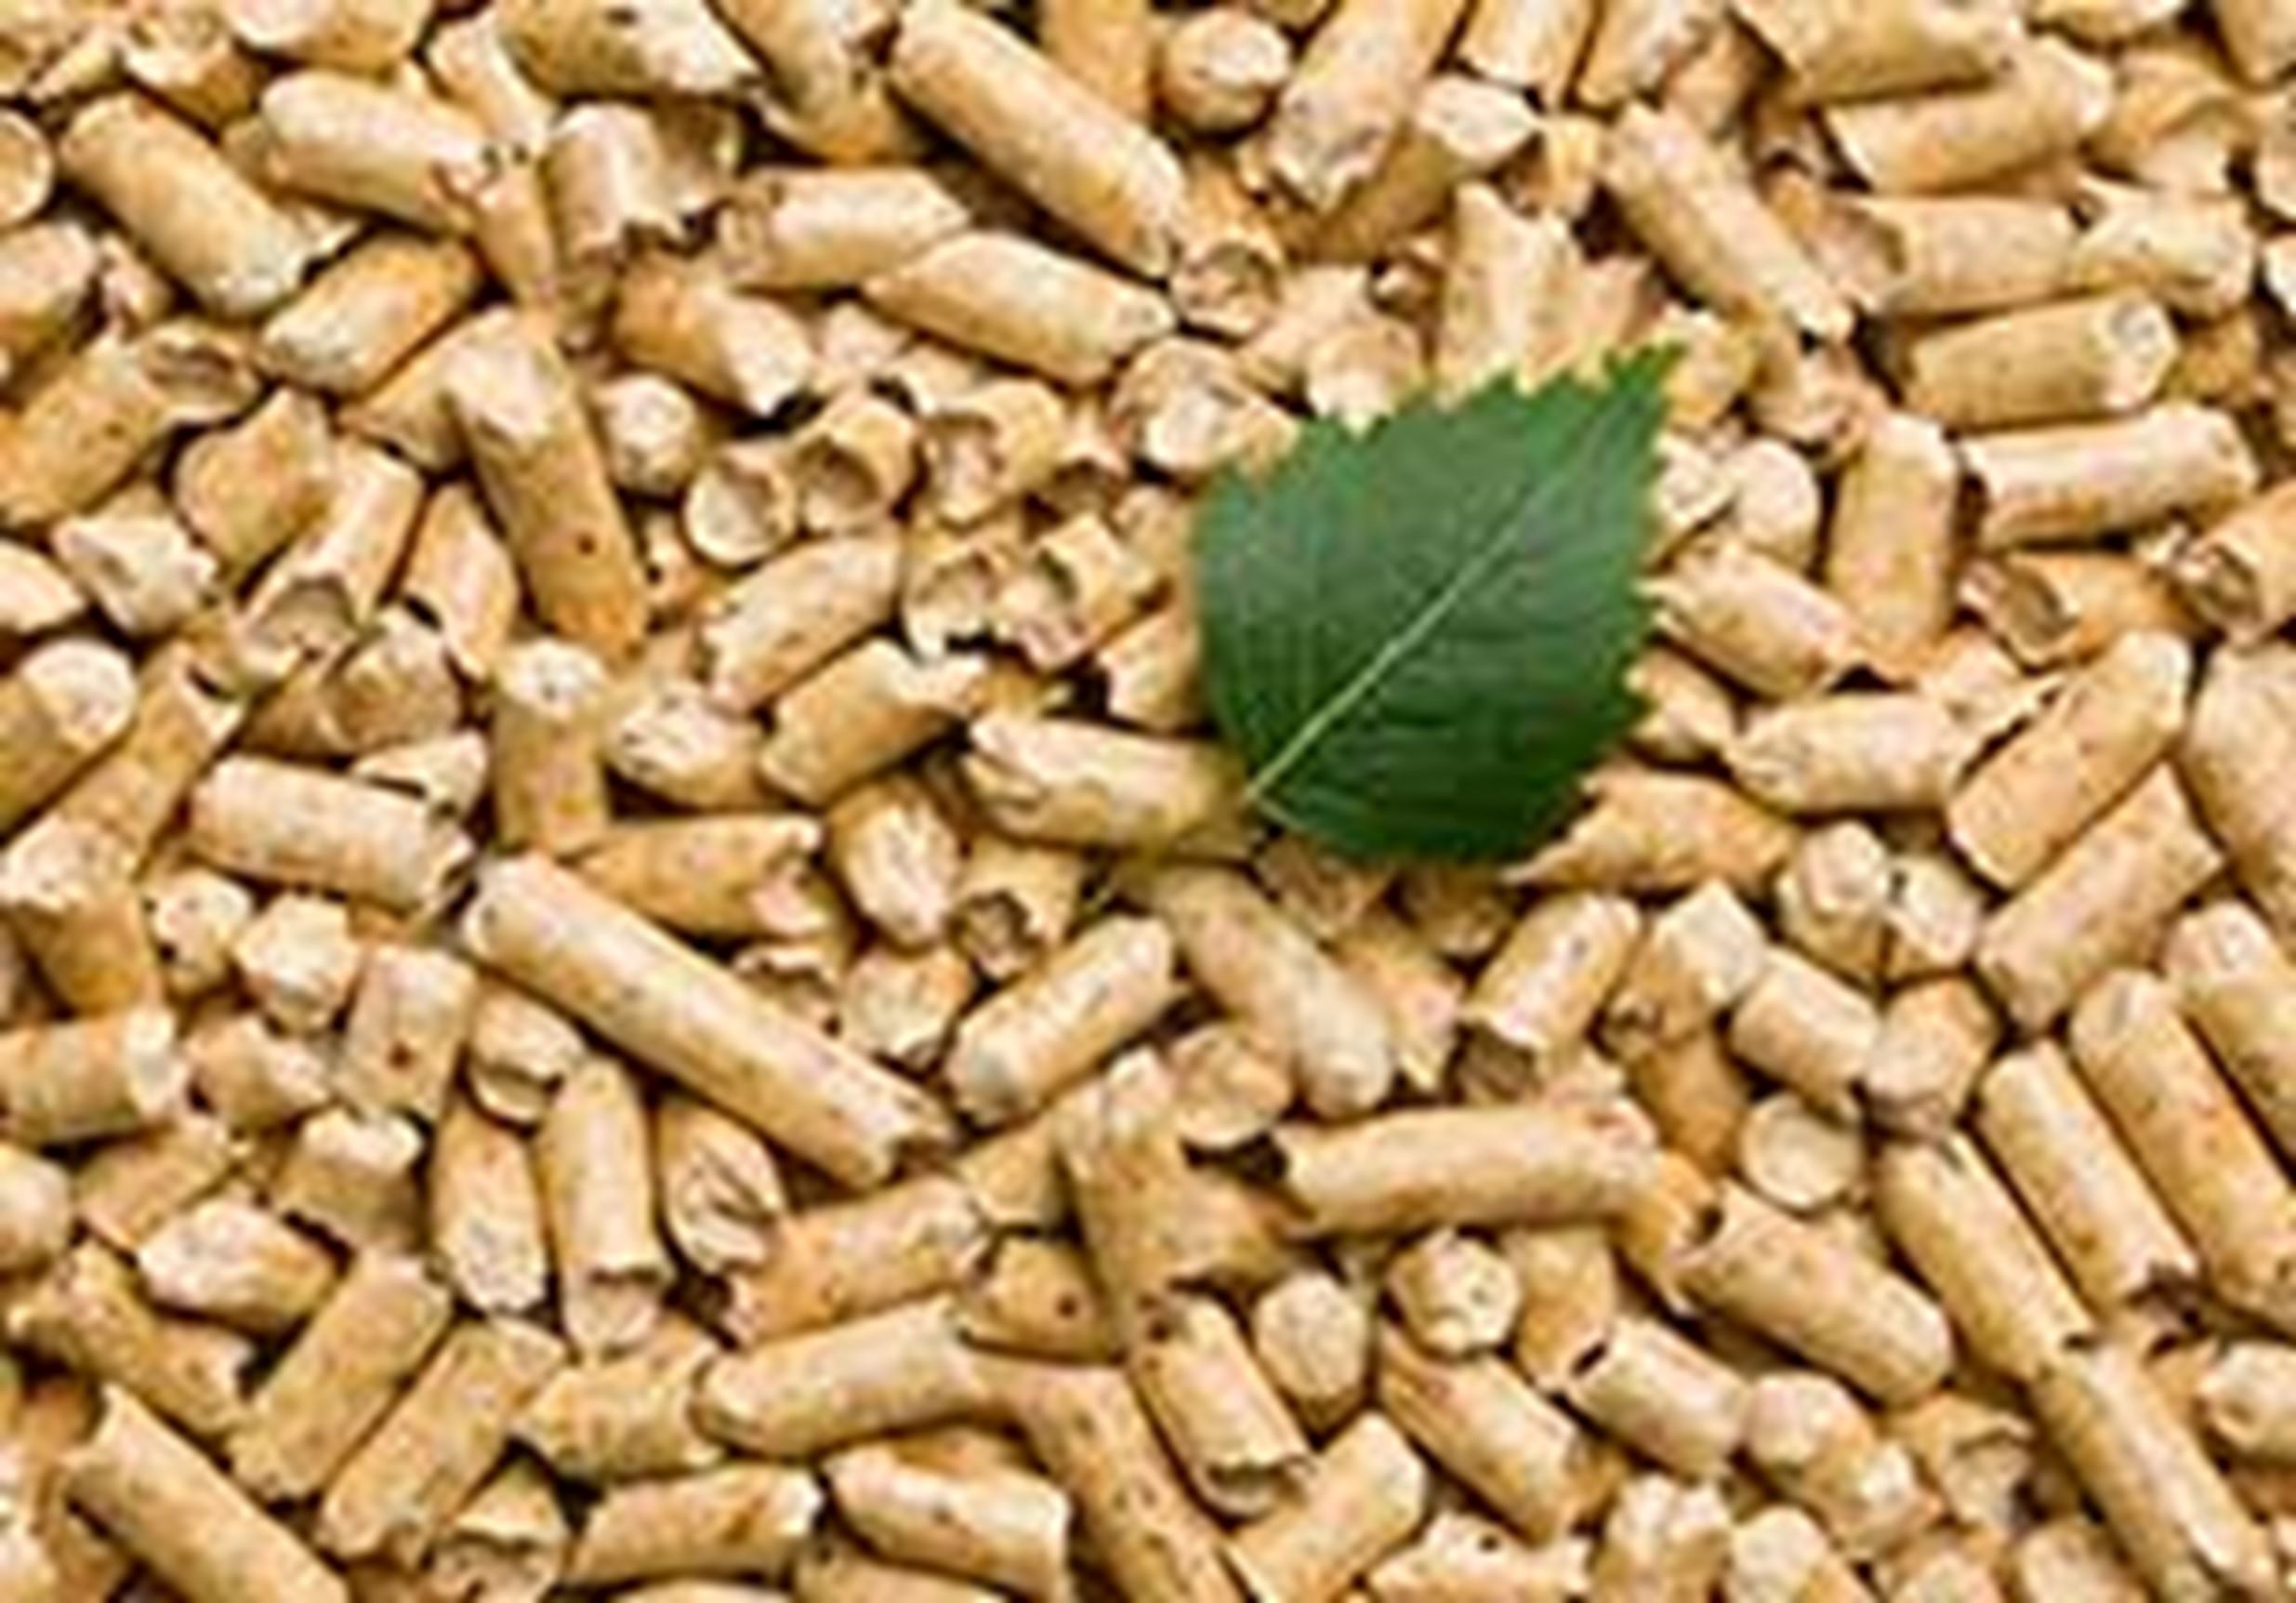 pellets biomasa